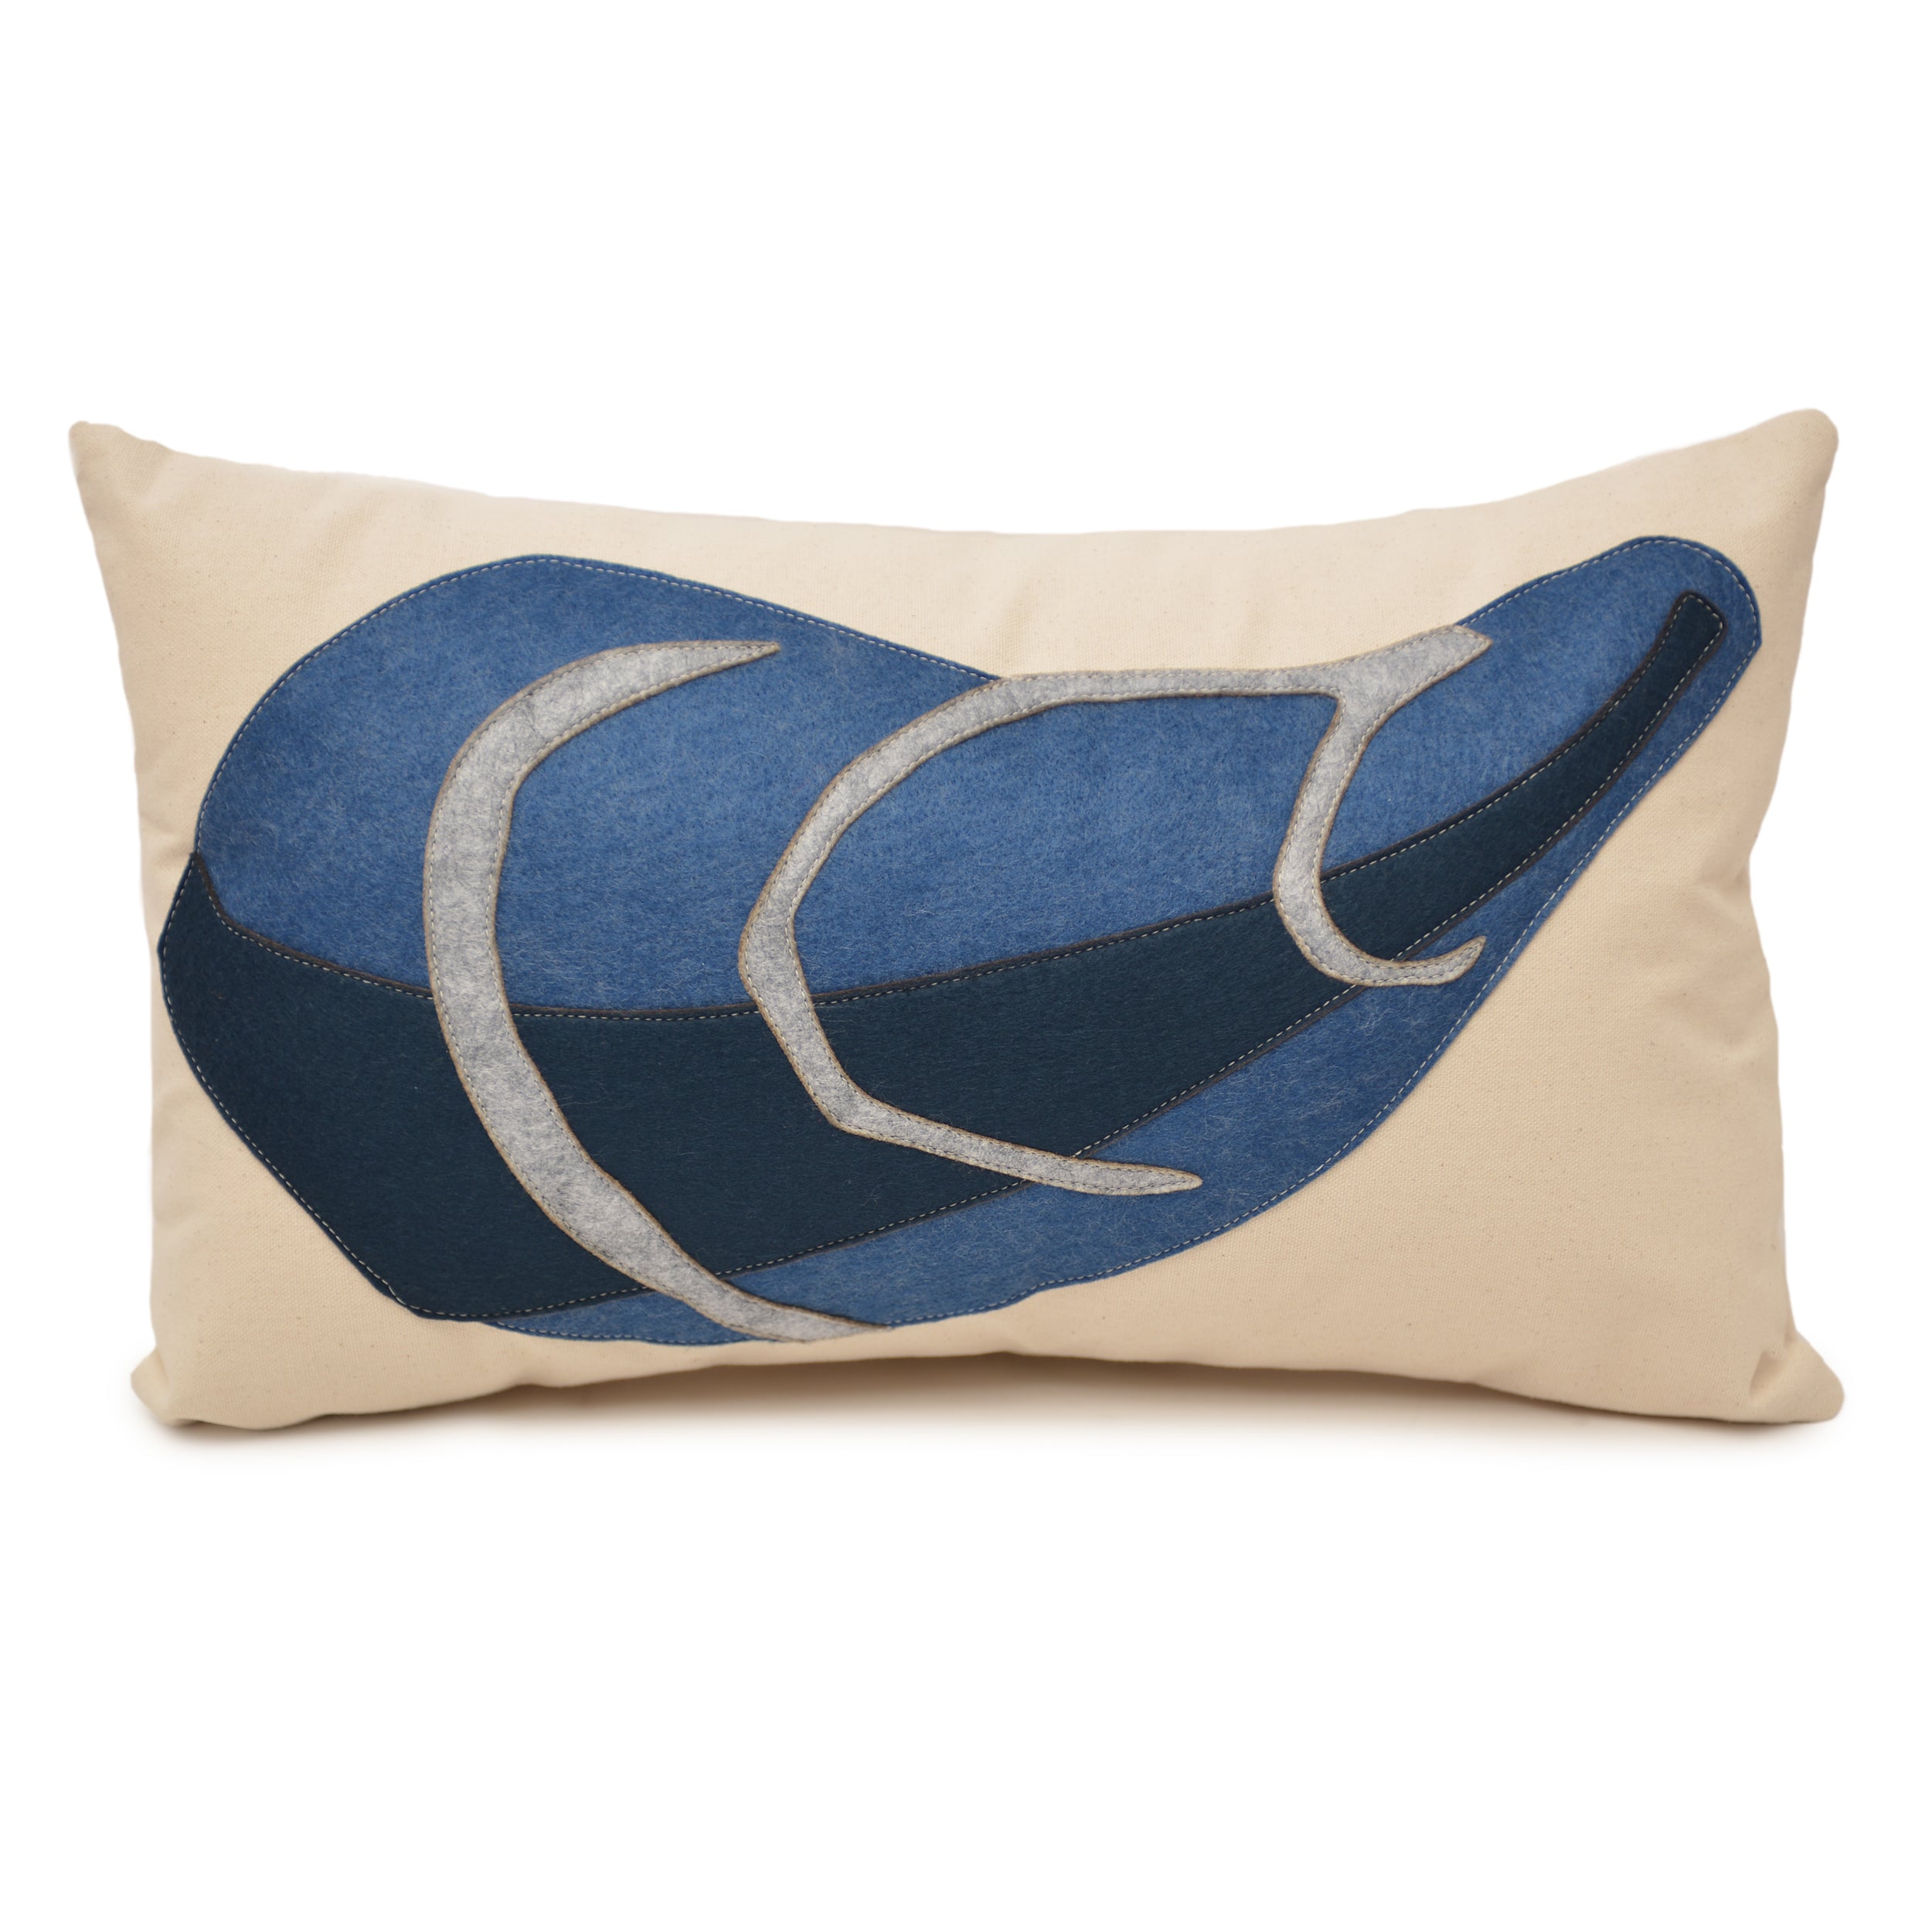 14X21" Mussel shell lumbar pillow - blues + grey